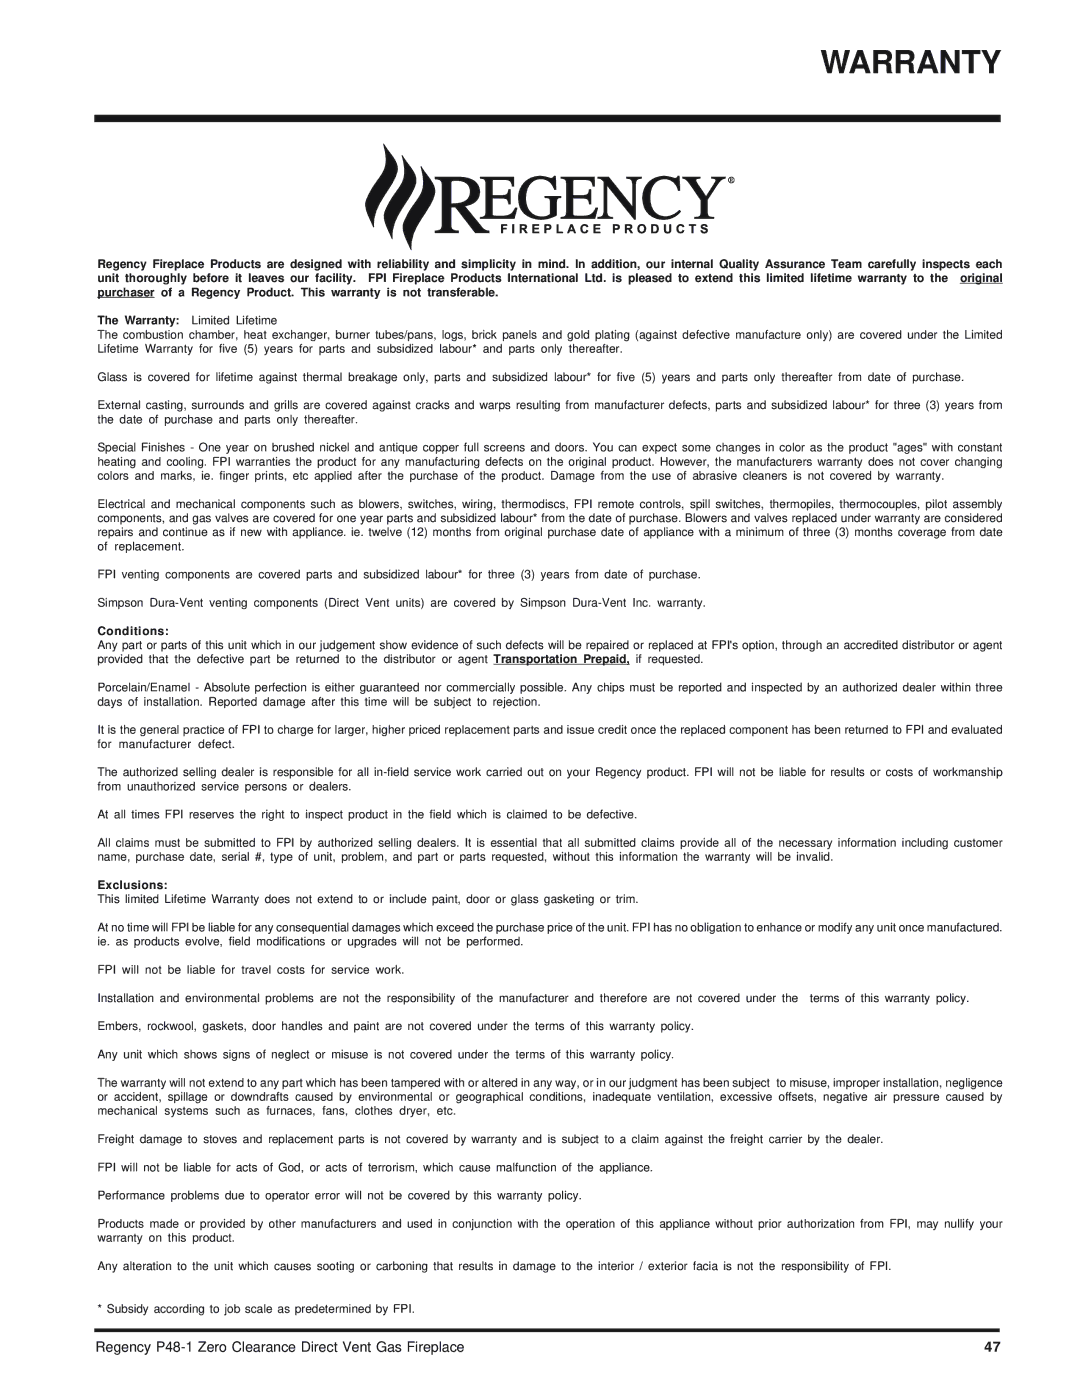 Regency P48-1 installation manual Warranty, Conditions 